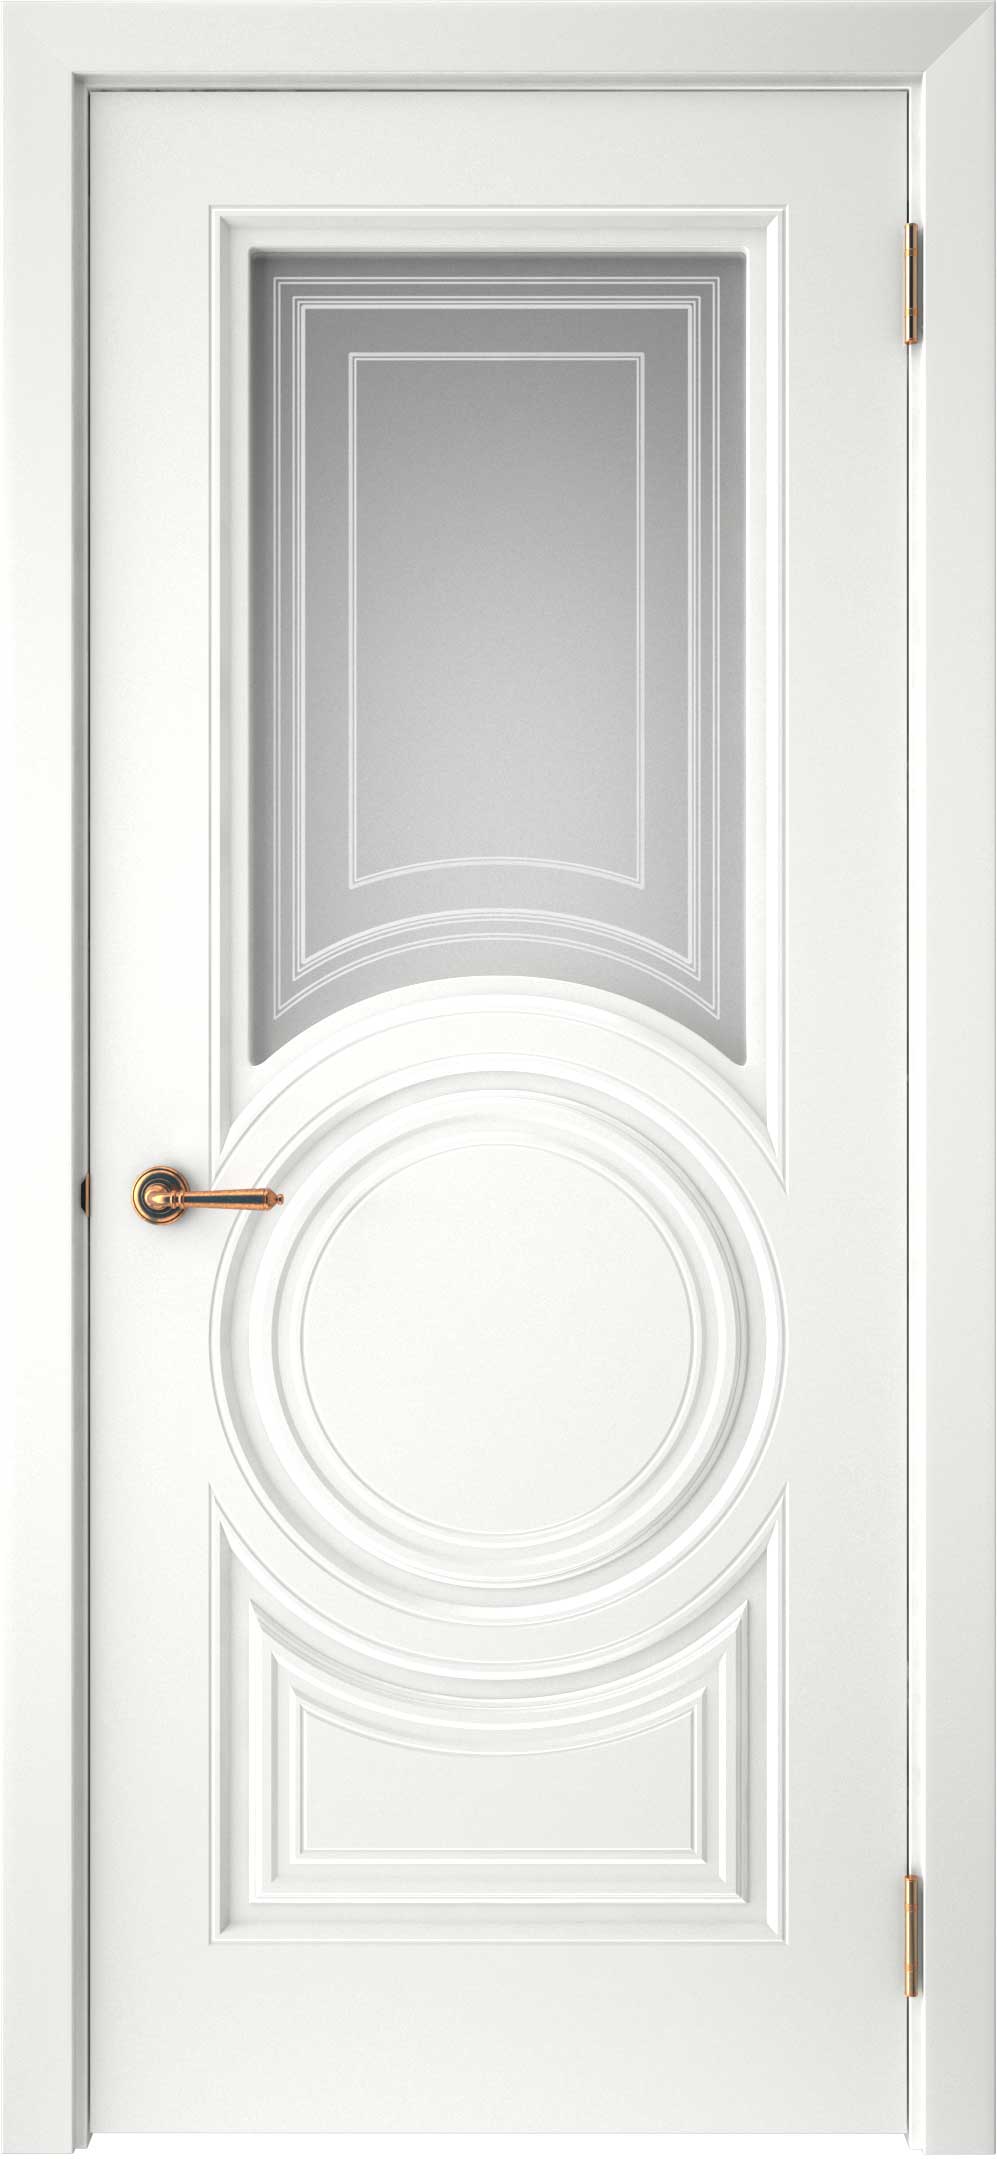 Двери крашеные (Эмаль) ТЕКОНА Смальта-45 со стеклом Белый ral размер 200 х 90 см. артикул F0000093319